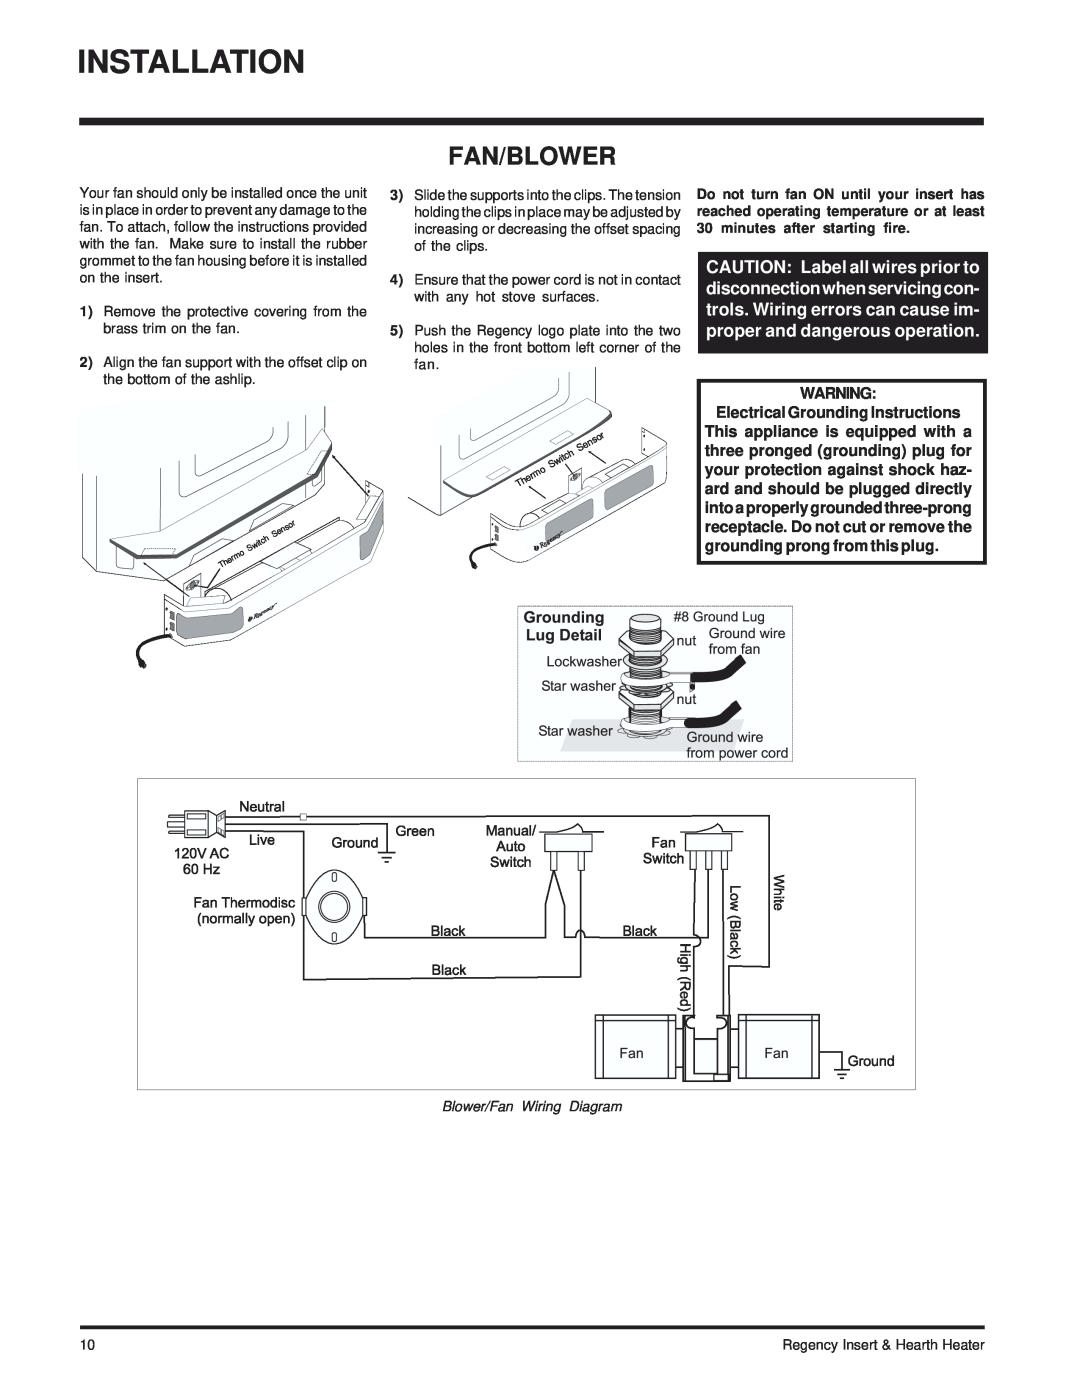 Regency I2100M installation manual Installation, Fan/Blower, Blower/Fan Wiring Diagram 